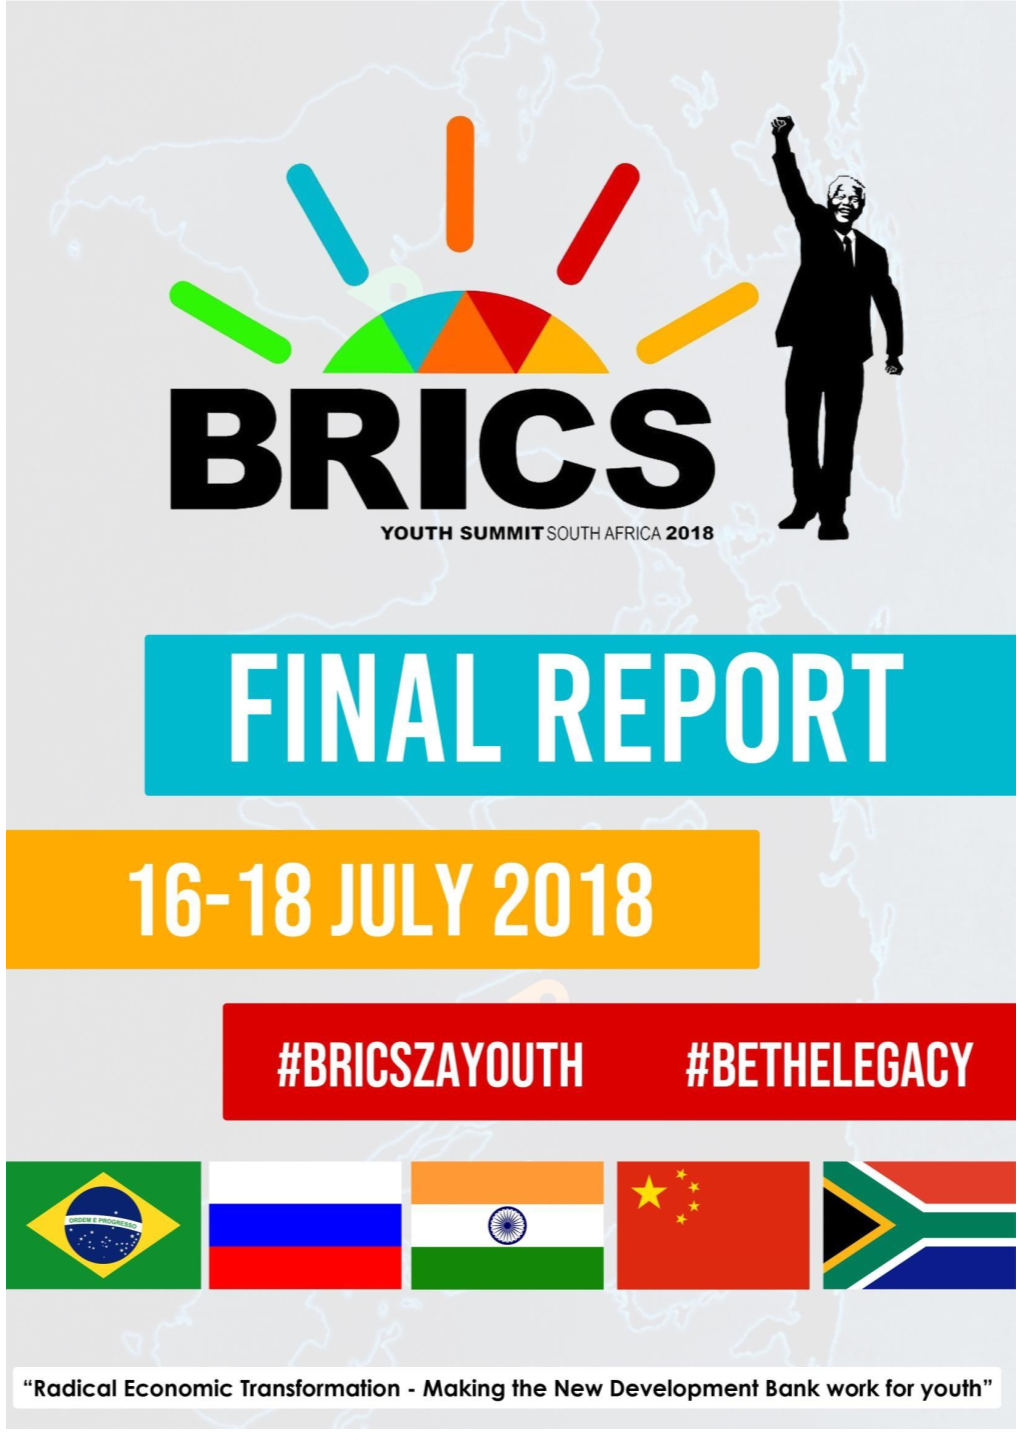 BRICS Youth Summit SA 2018 Final Report